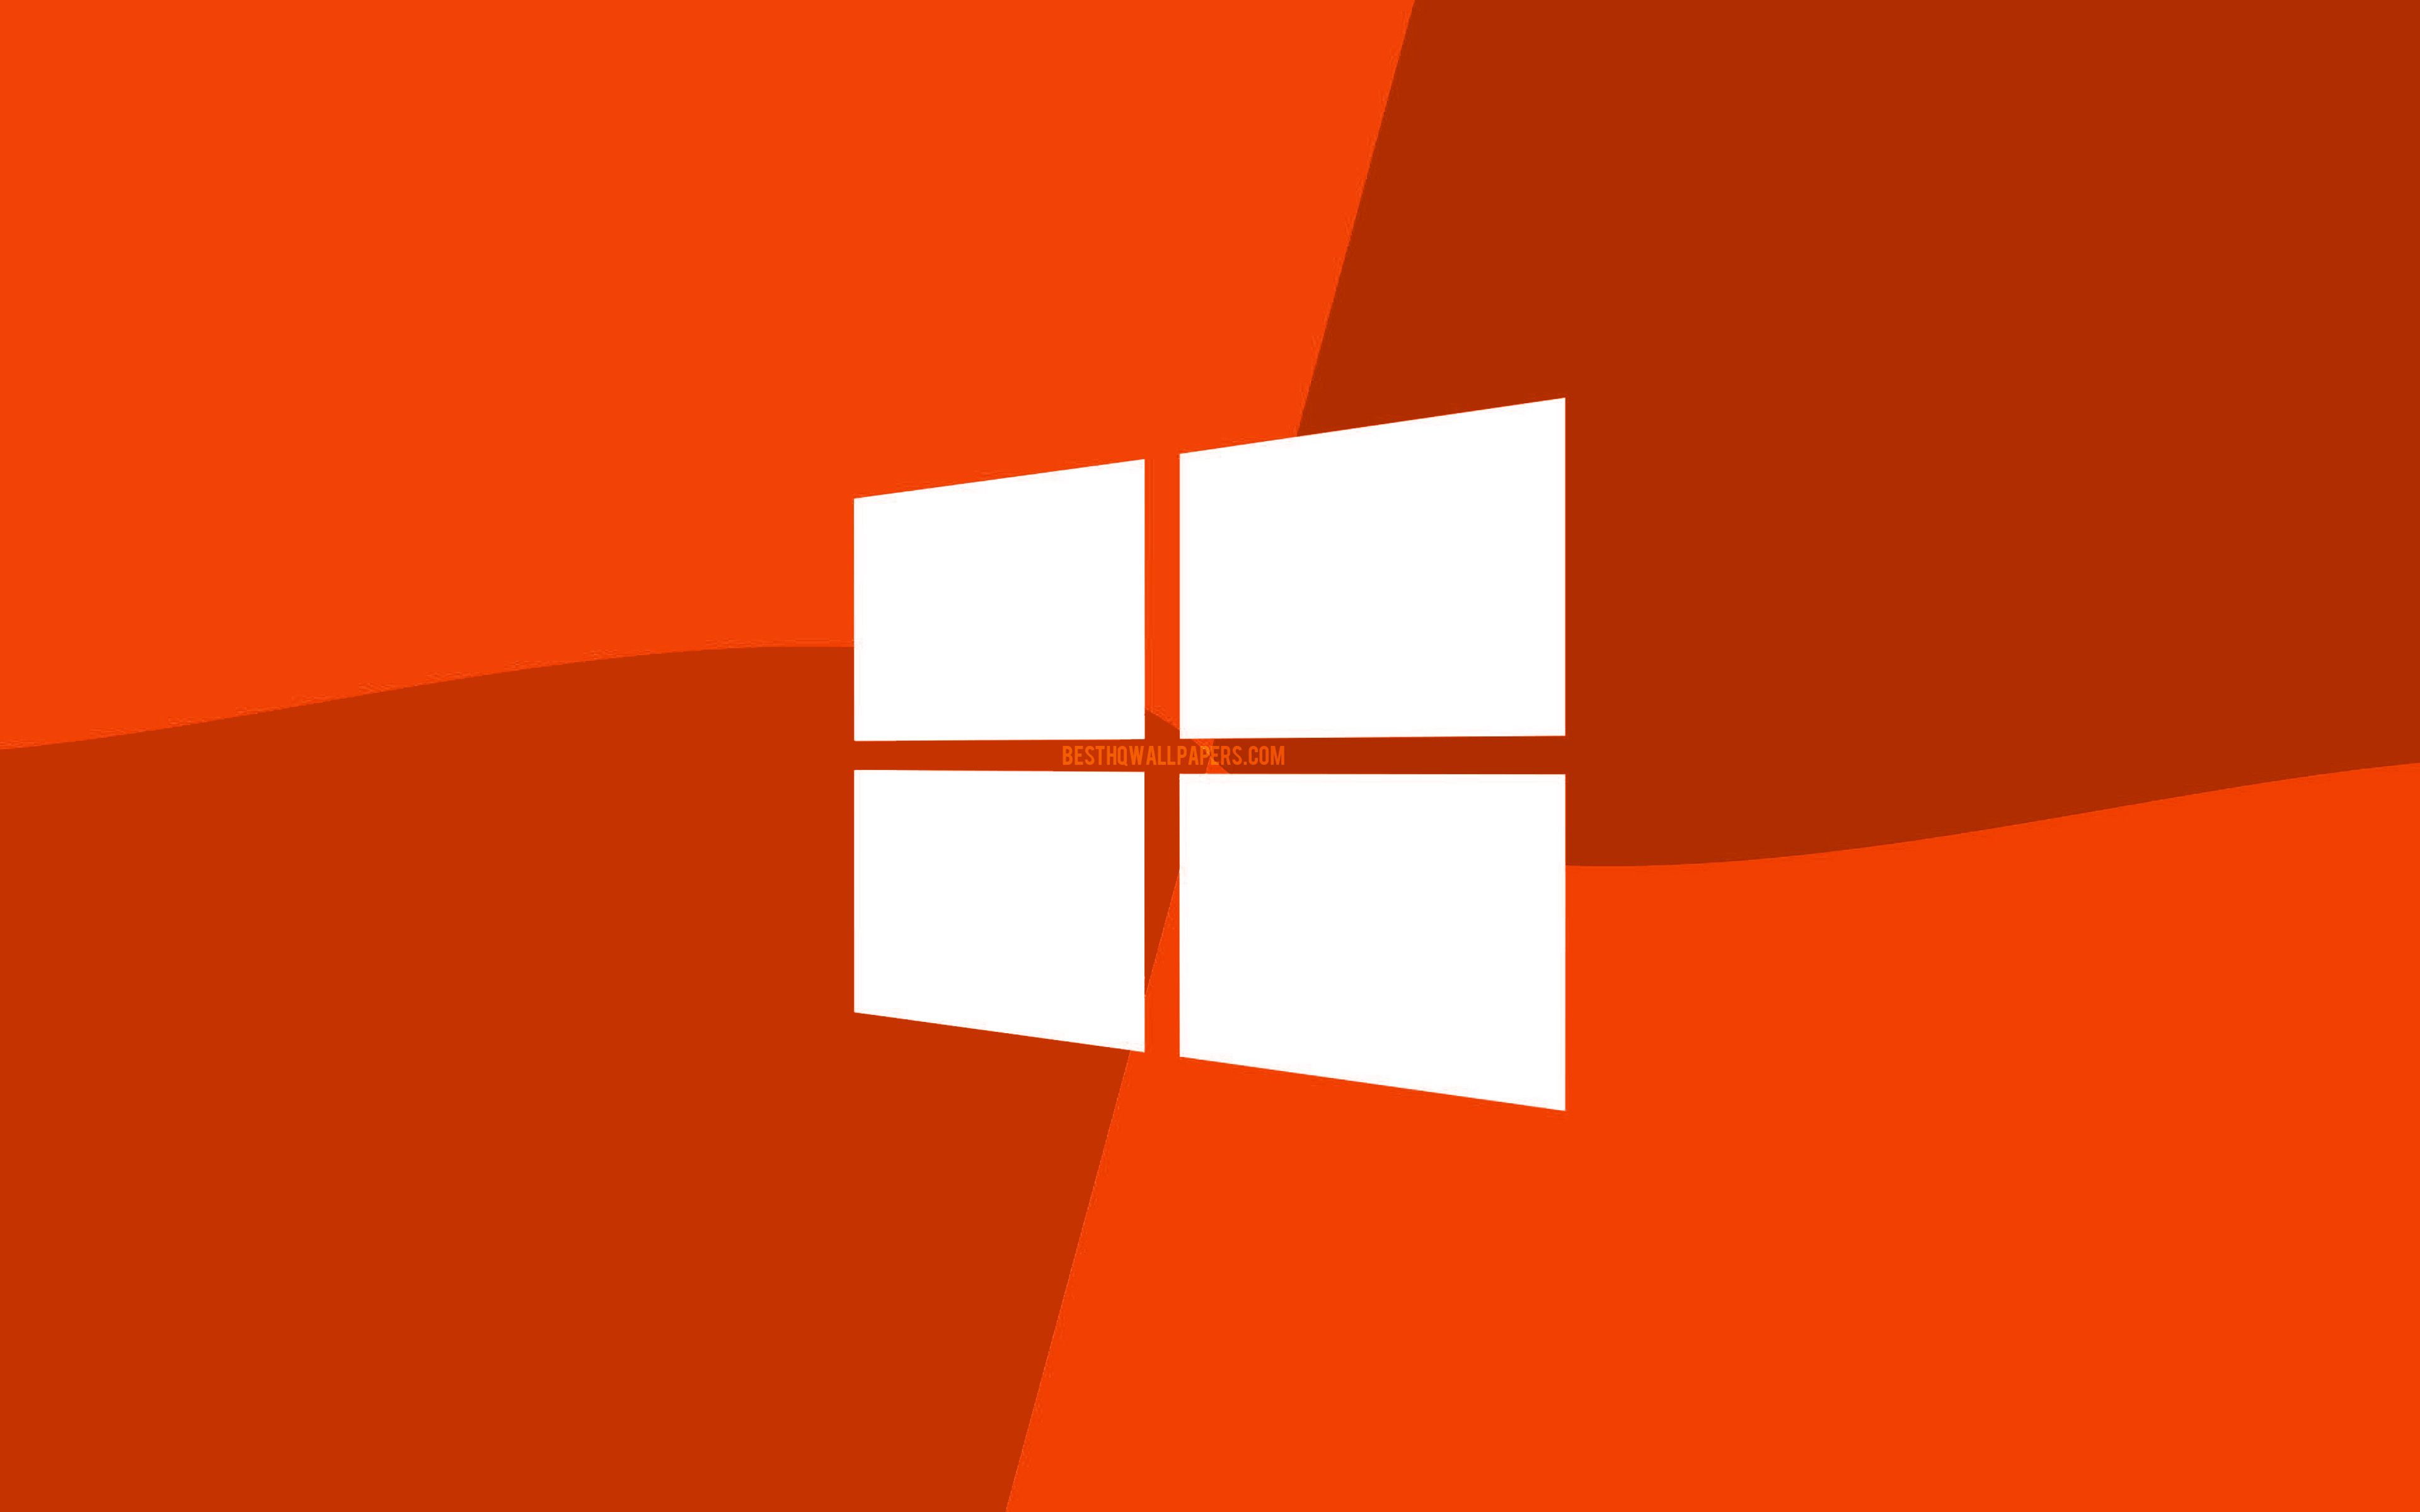 Hình nền Windows 10 màu cam - Hầm ảnh nền sẽ khiến bạn bất ngờ trước vẻ đẹp hoang sơ nhưng đầy sức mạnh. Với màu cam tươi sáng, hình nền này sẽ giúp máy tính của bạn trở nên thật bắt mắt và độc đáo.